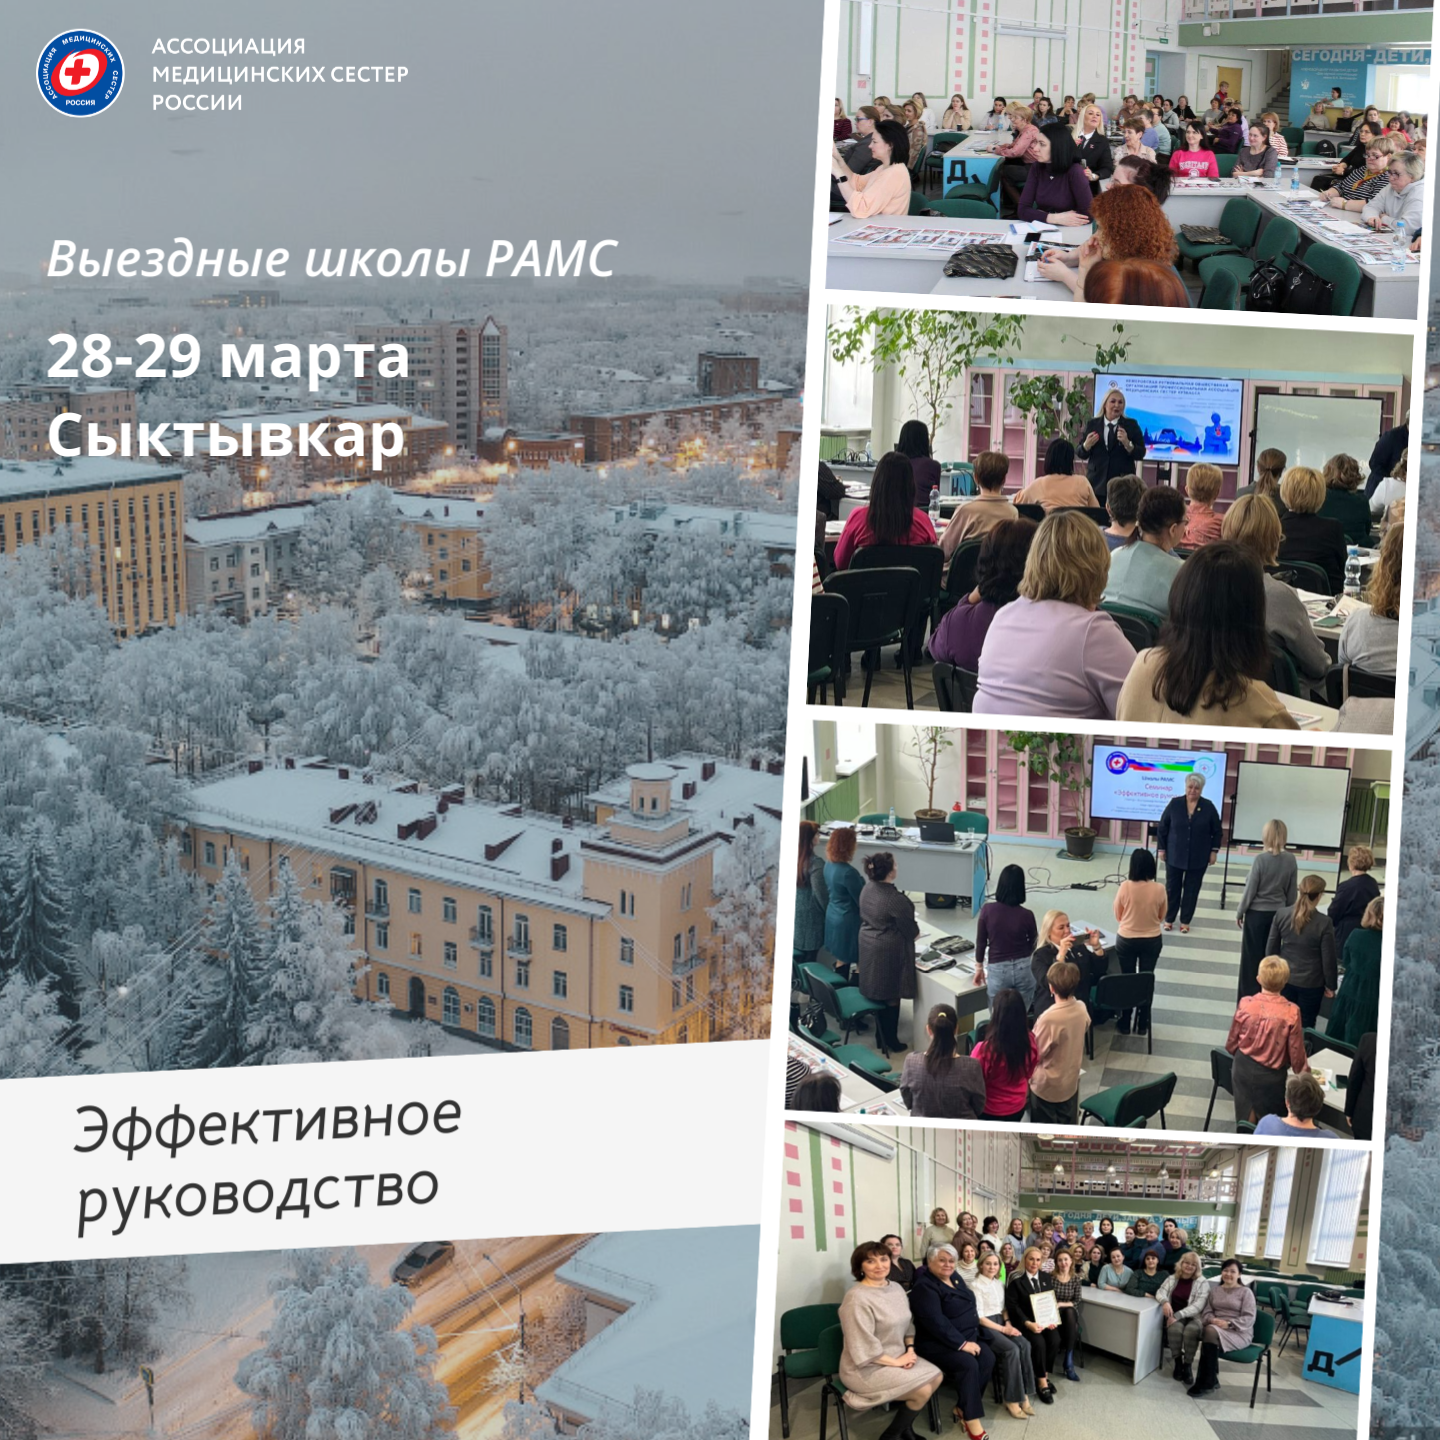 28-29 марта вместе с Выездной школой РАМС специалисты Республики Коми обсудили вопросы эффективного руководства